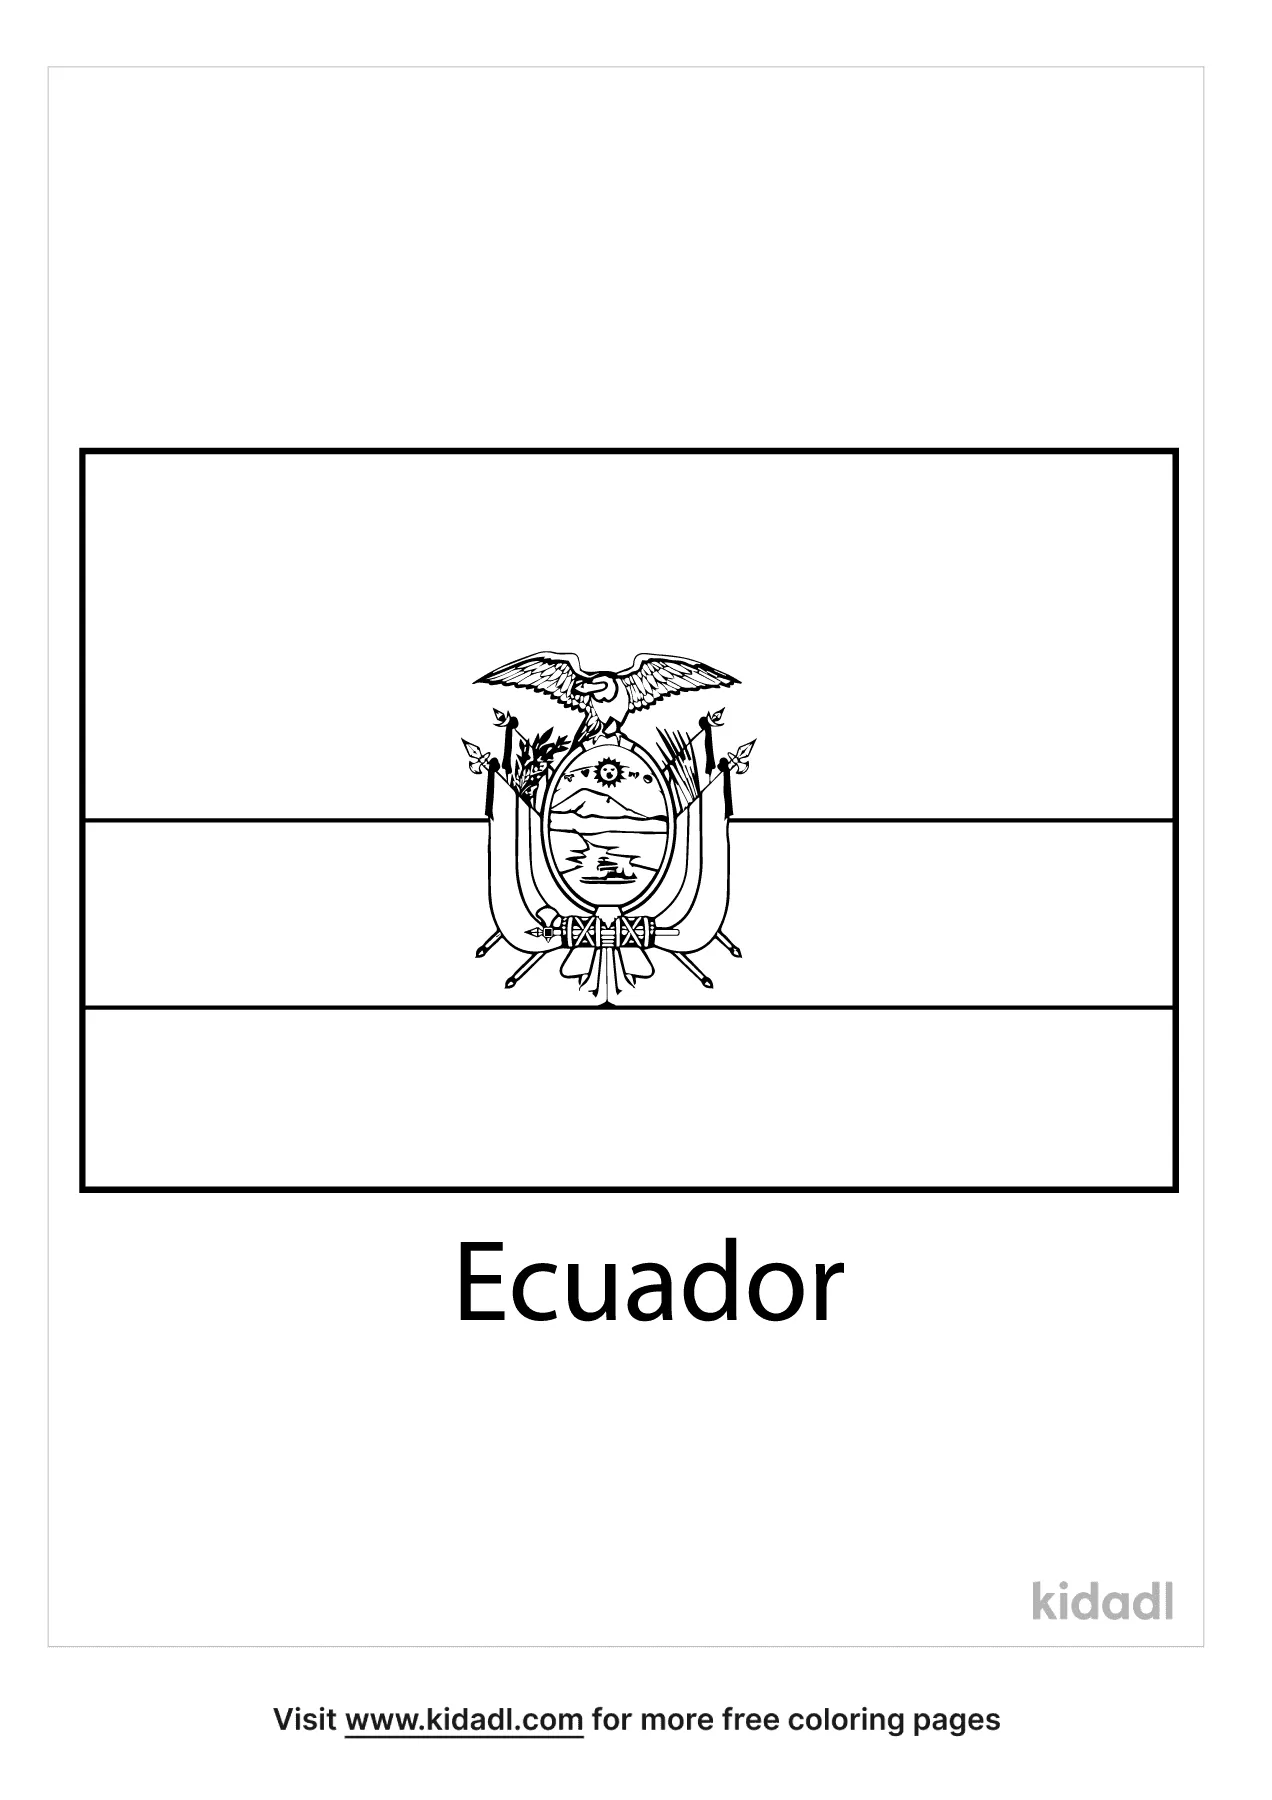 Free ecuador flag coloring page coloring page printables